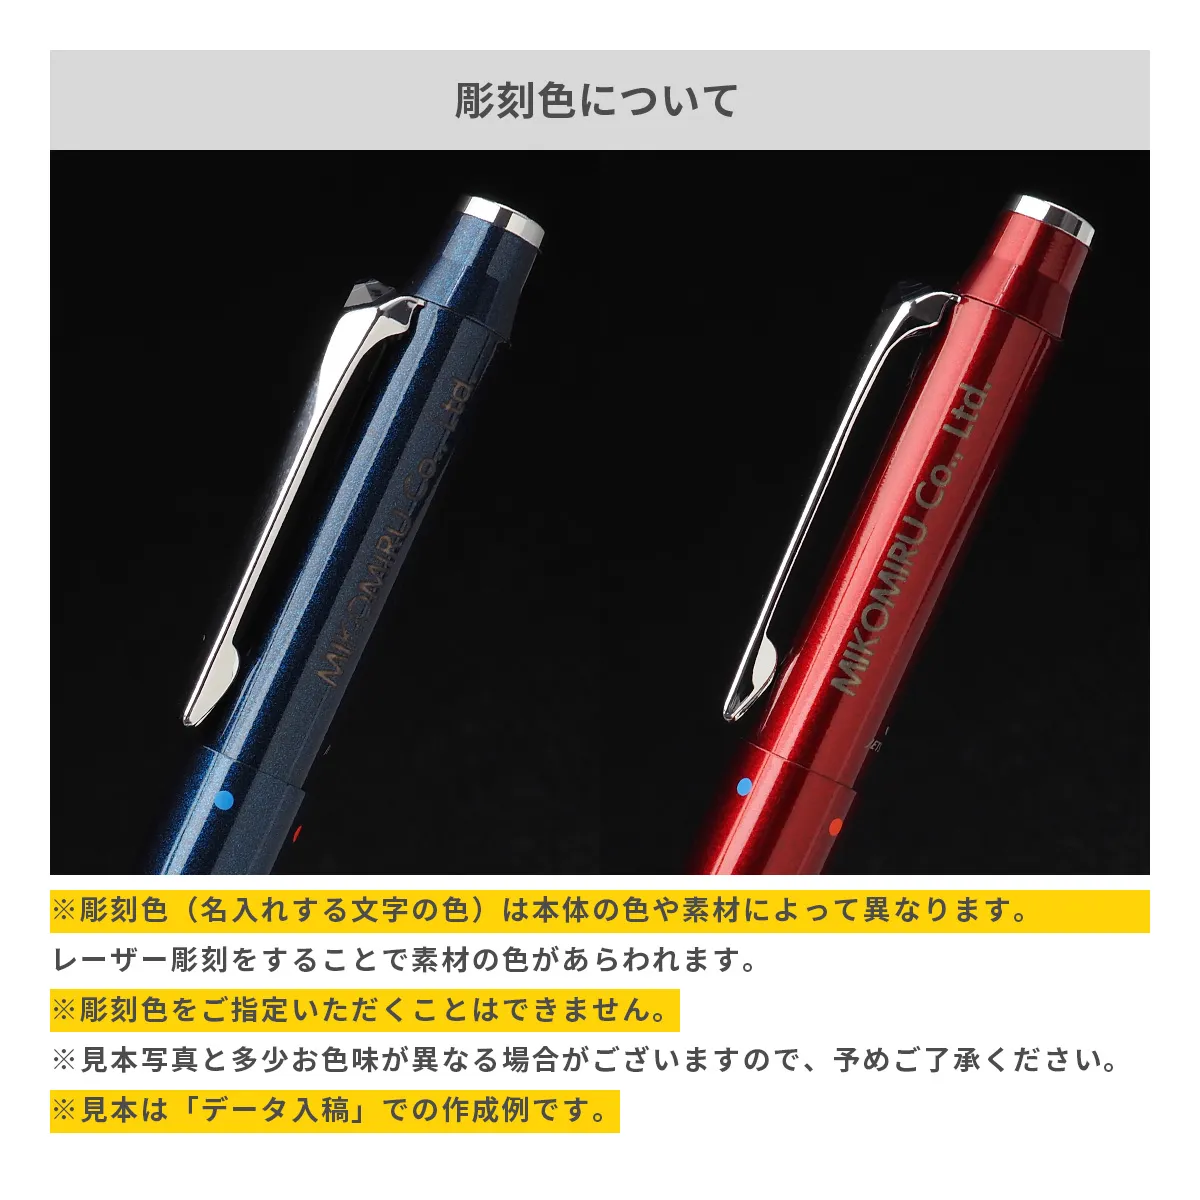 【短納期】三菱鉛筆 ジェットストリーム プライム 多機能ペン 3&1 0.5mm【多機能ペン / レーザー彫刻】 画像6